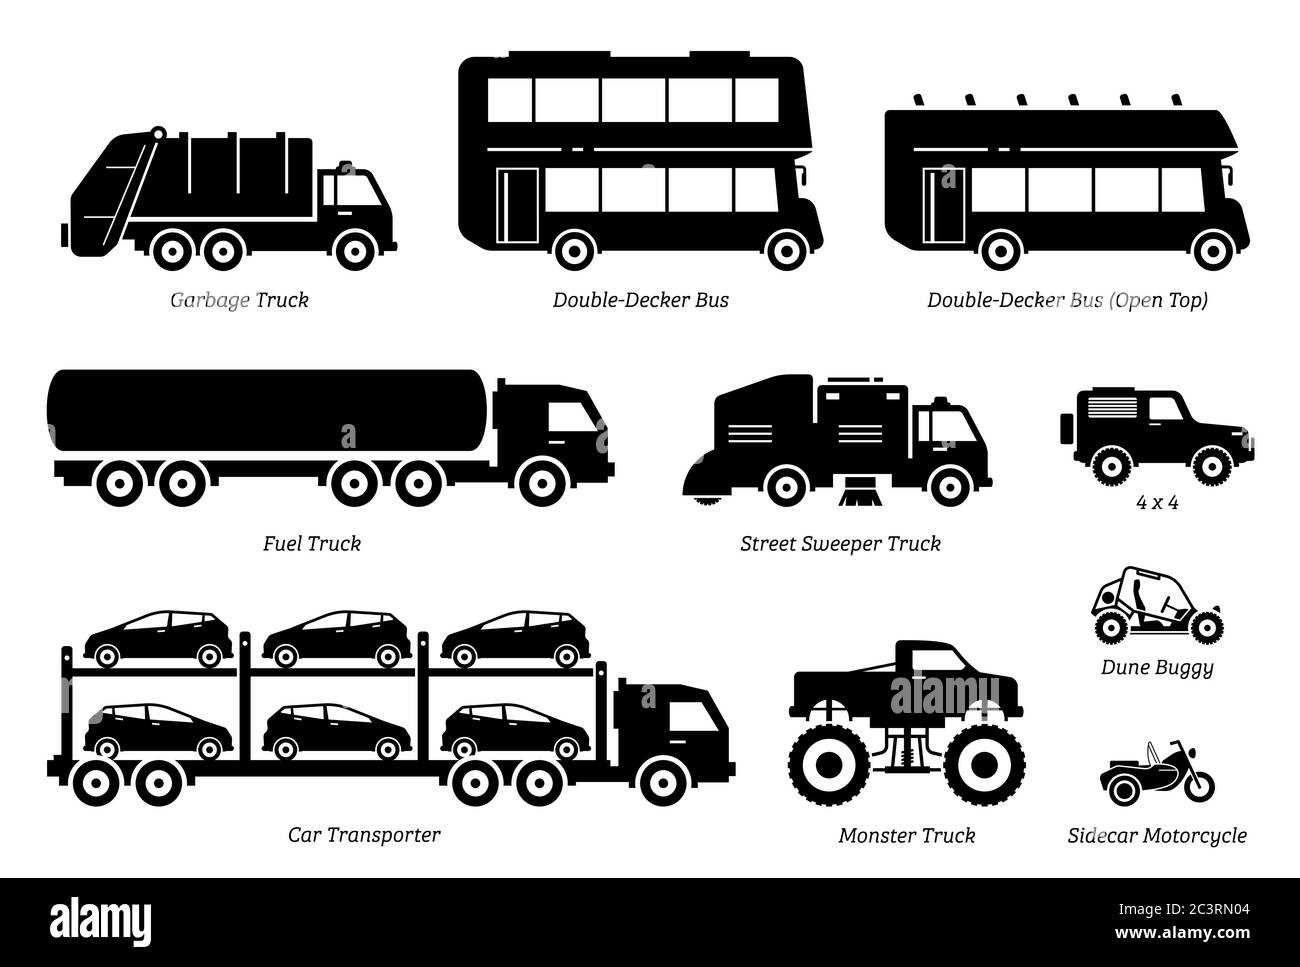 Elenco delle icone dei veicoli per uso speciale. Vista laterale di camion spazzatura, autobus a due piani, camion carburante, spazzatrice stradale, 4wd, trasportatore auto, mo Illustrazione Vettoriale